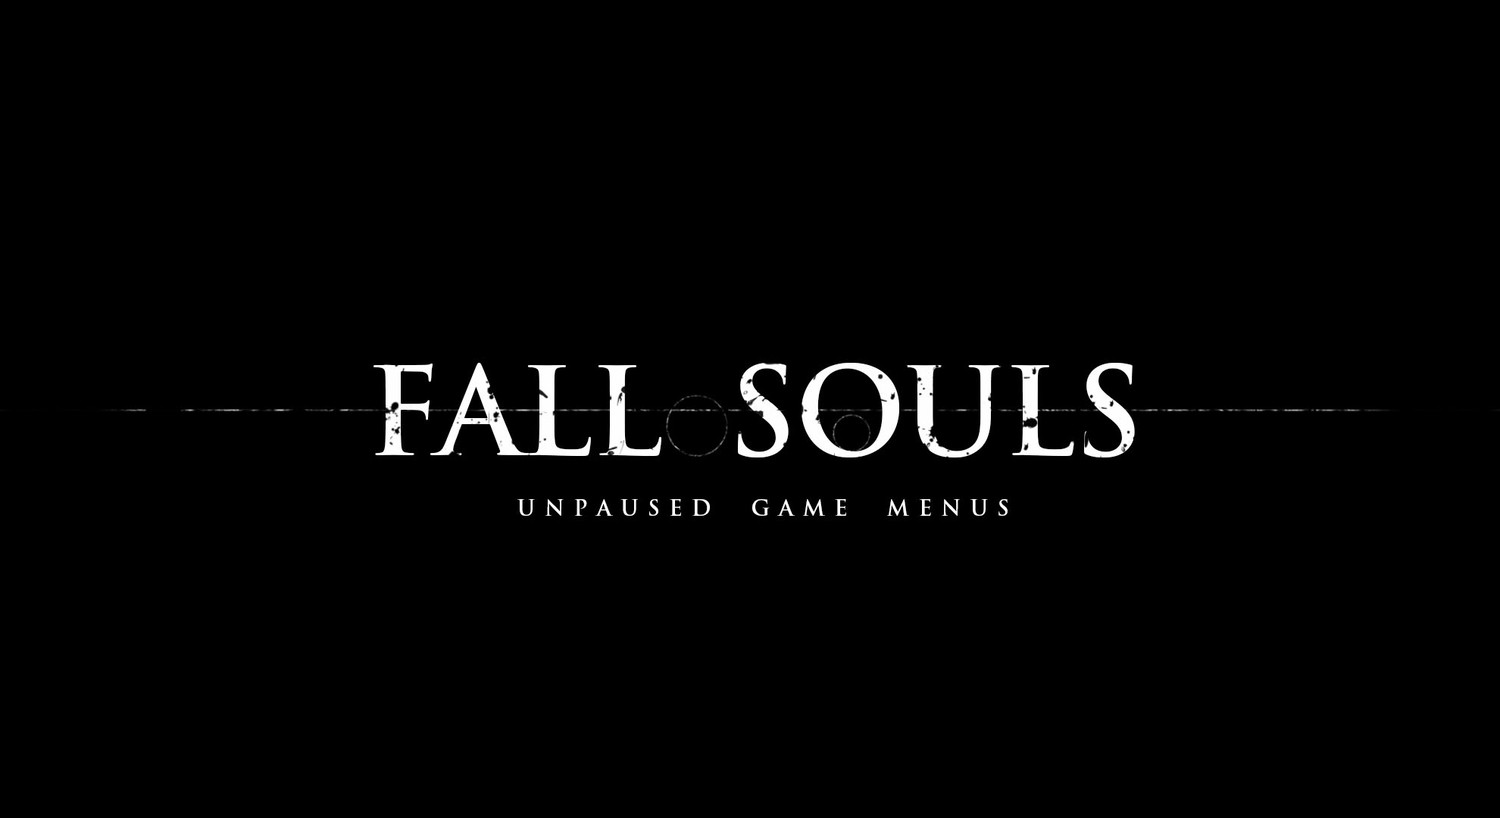 Время не останавливается при открытии игровых меню / FallSouls - Unpaused Game Menus